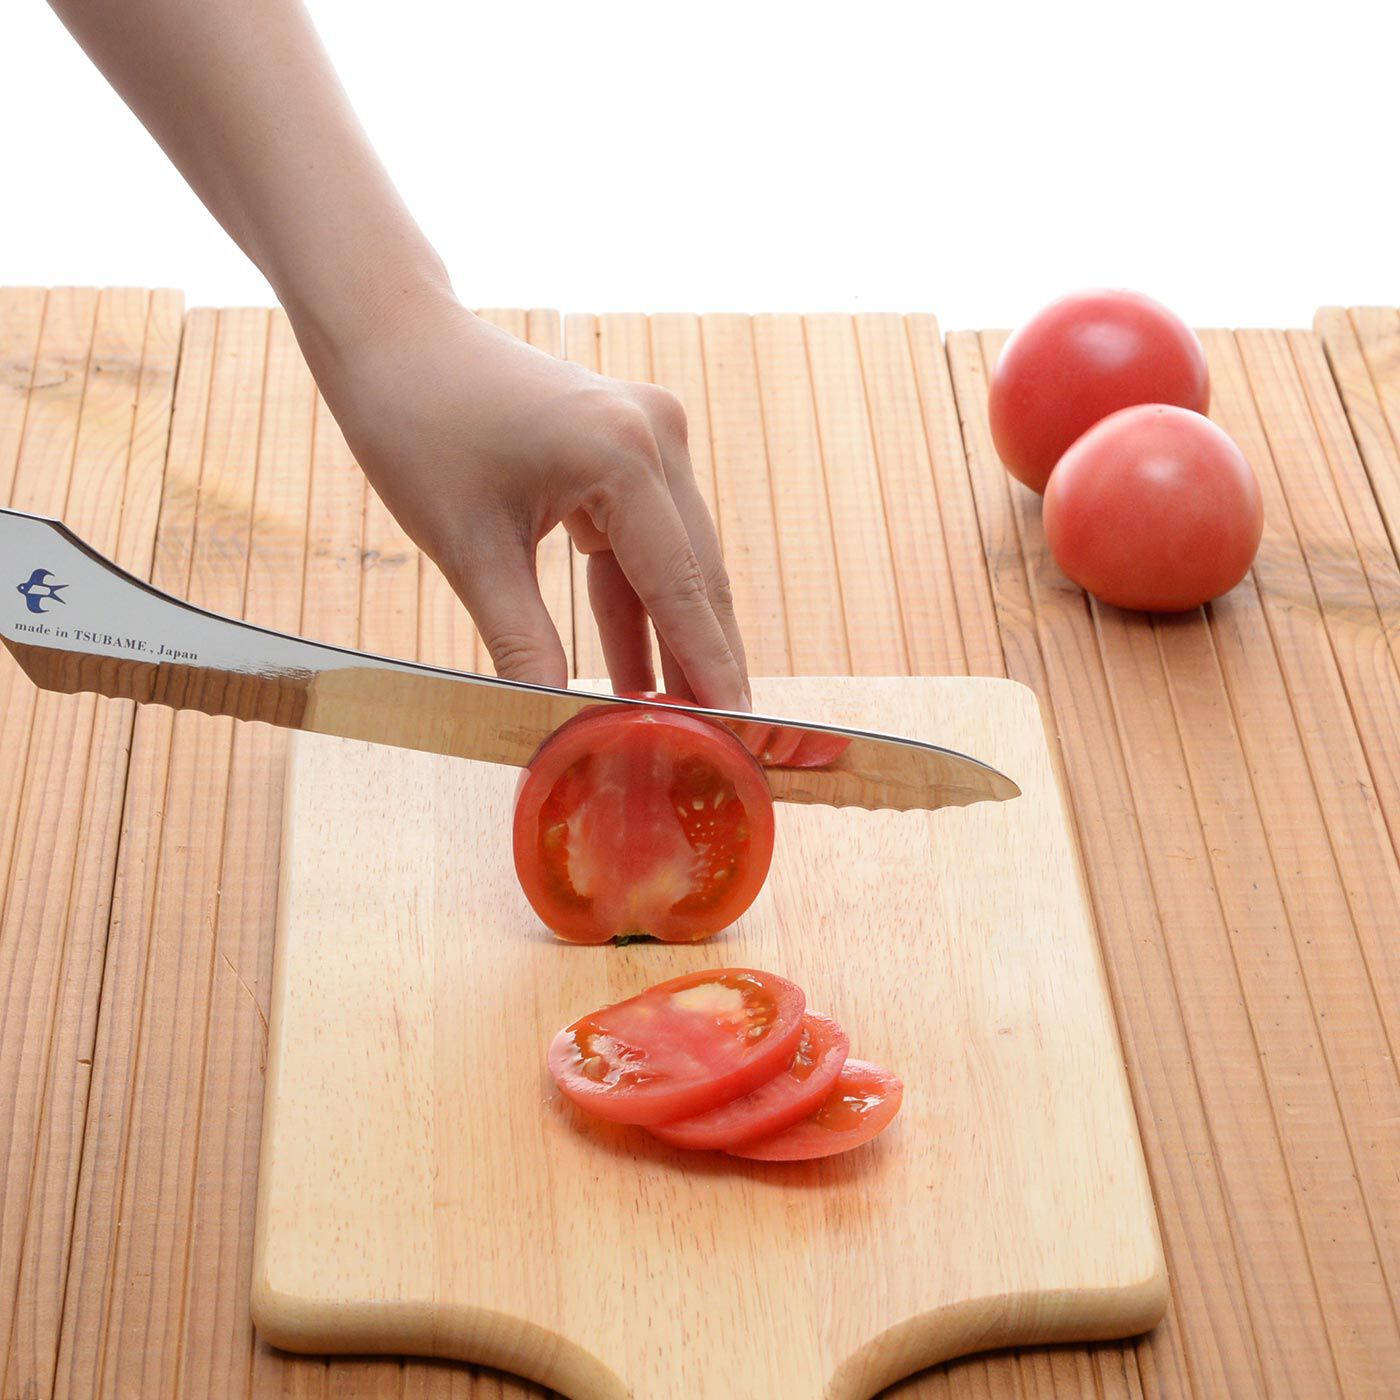 フェリシモの雑貨 Kraso|波刃と直刃がポイント！ 硬くてもやわらかくてもきれいに切れるパンナイフ|皮と果肉の硬さが違って切るときに失敗しやすいトマトも波刃と直刃でスパッと切ることができます